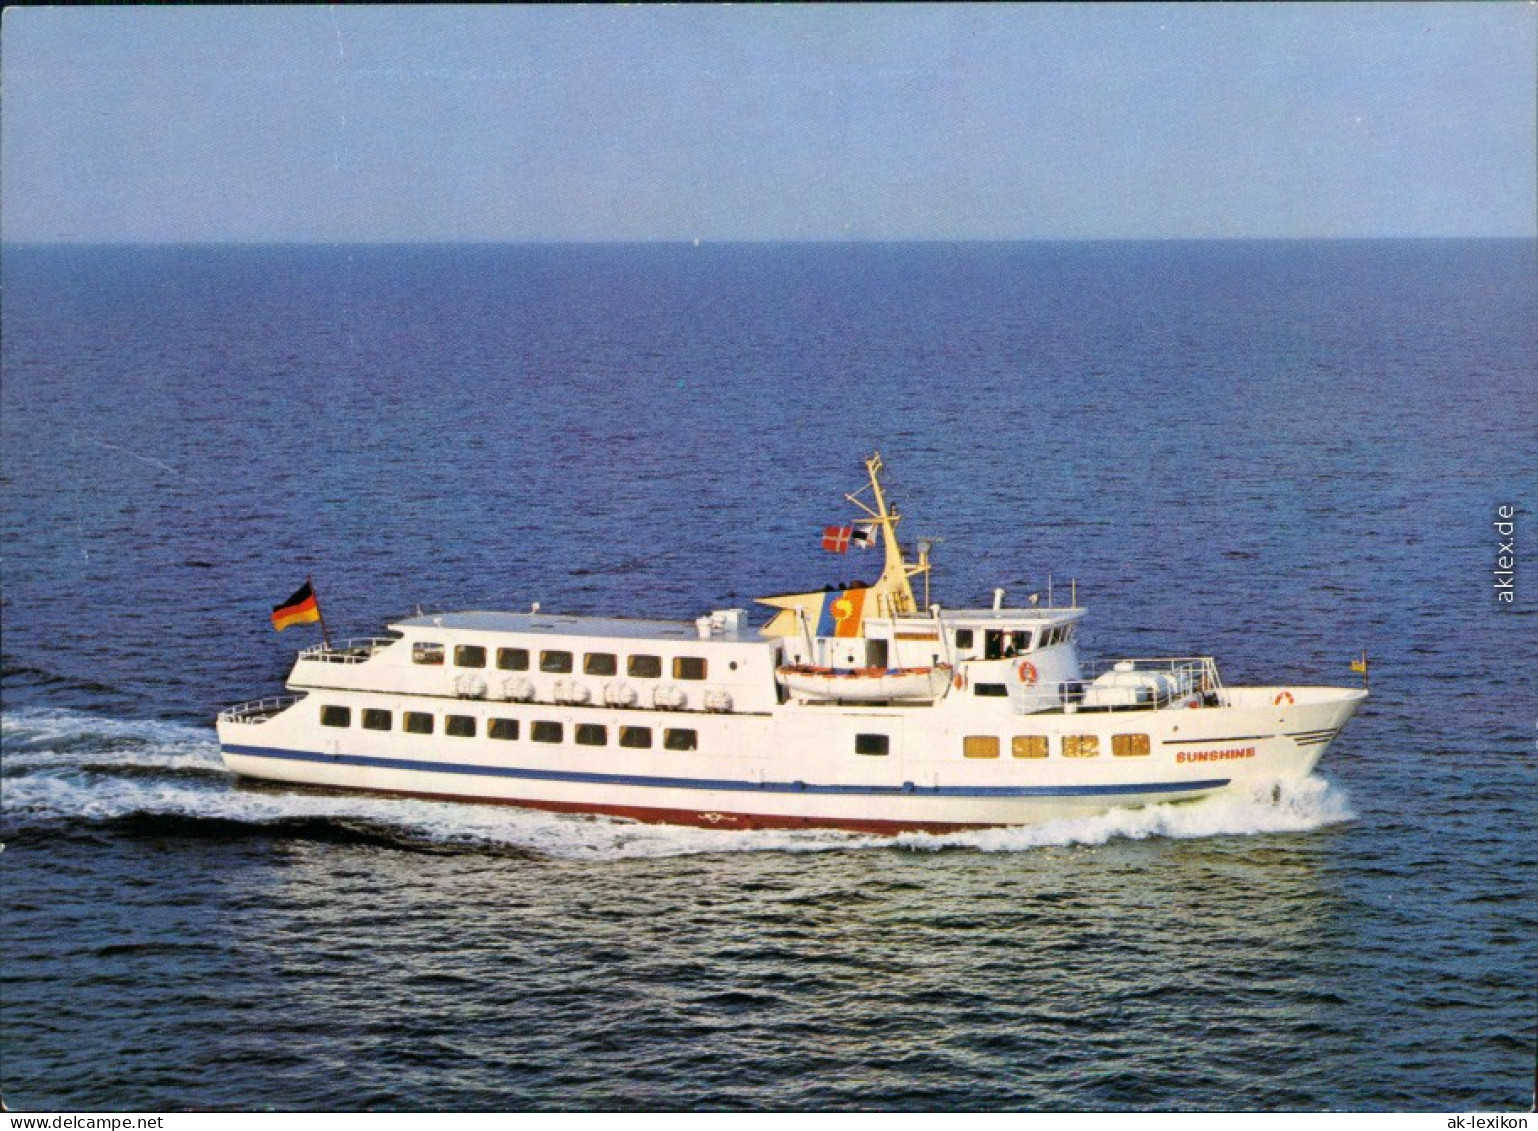 Ansichtskarte  Fährschiff MS "Sunshine" 1985 - Veerboten